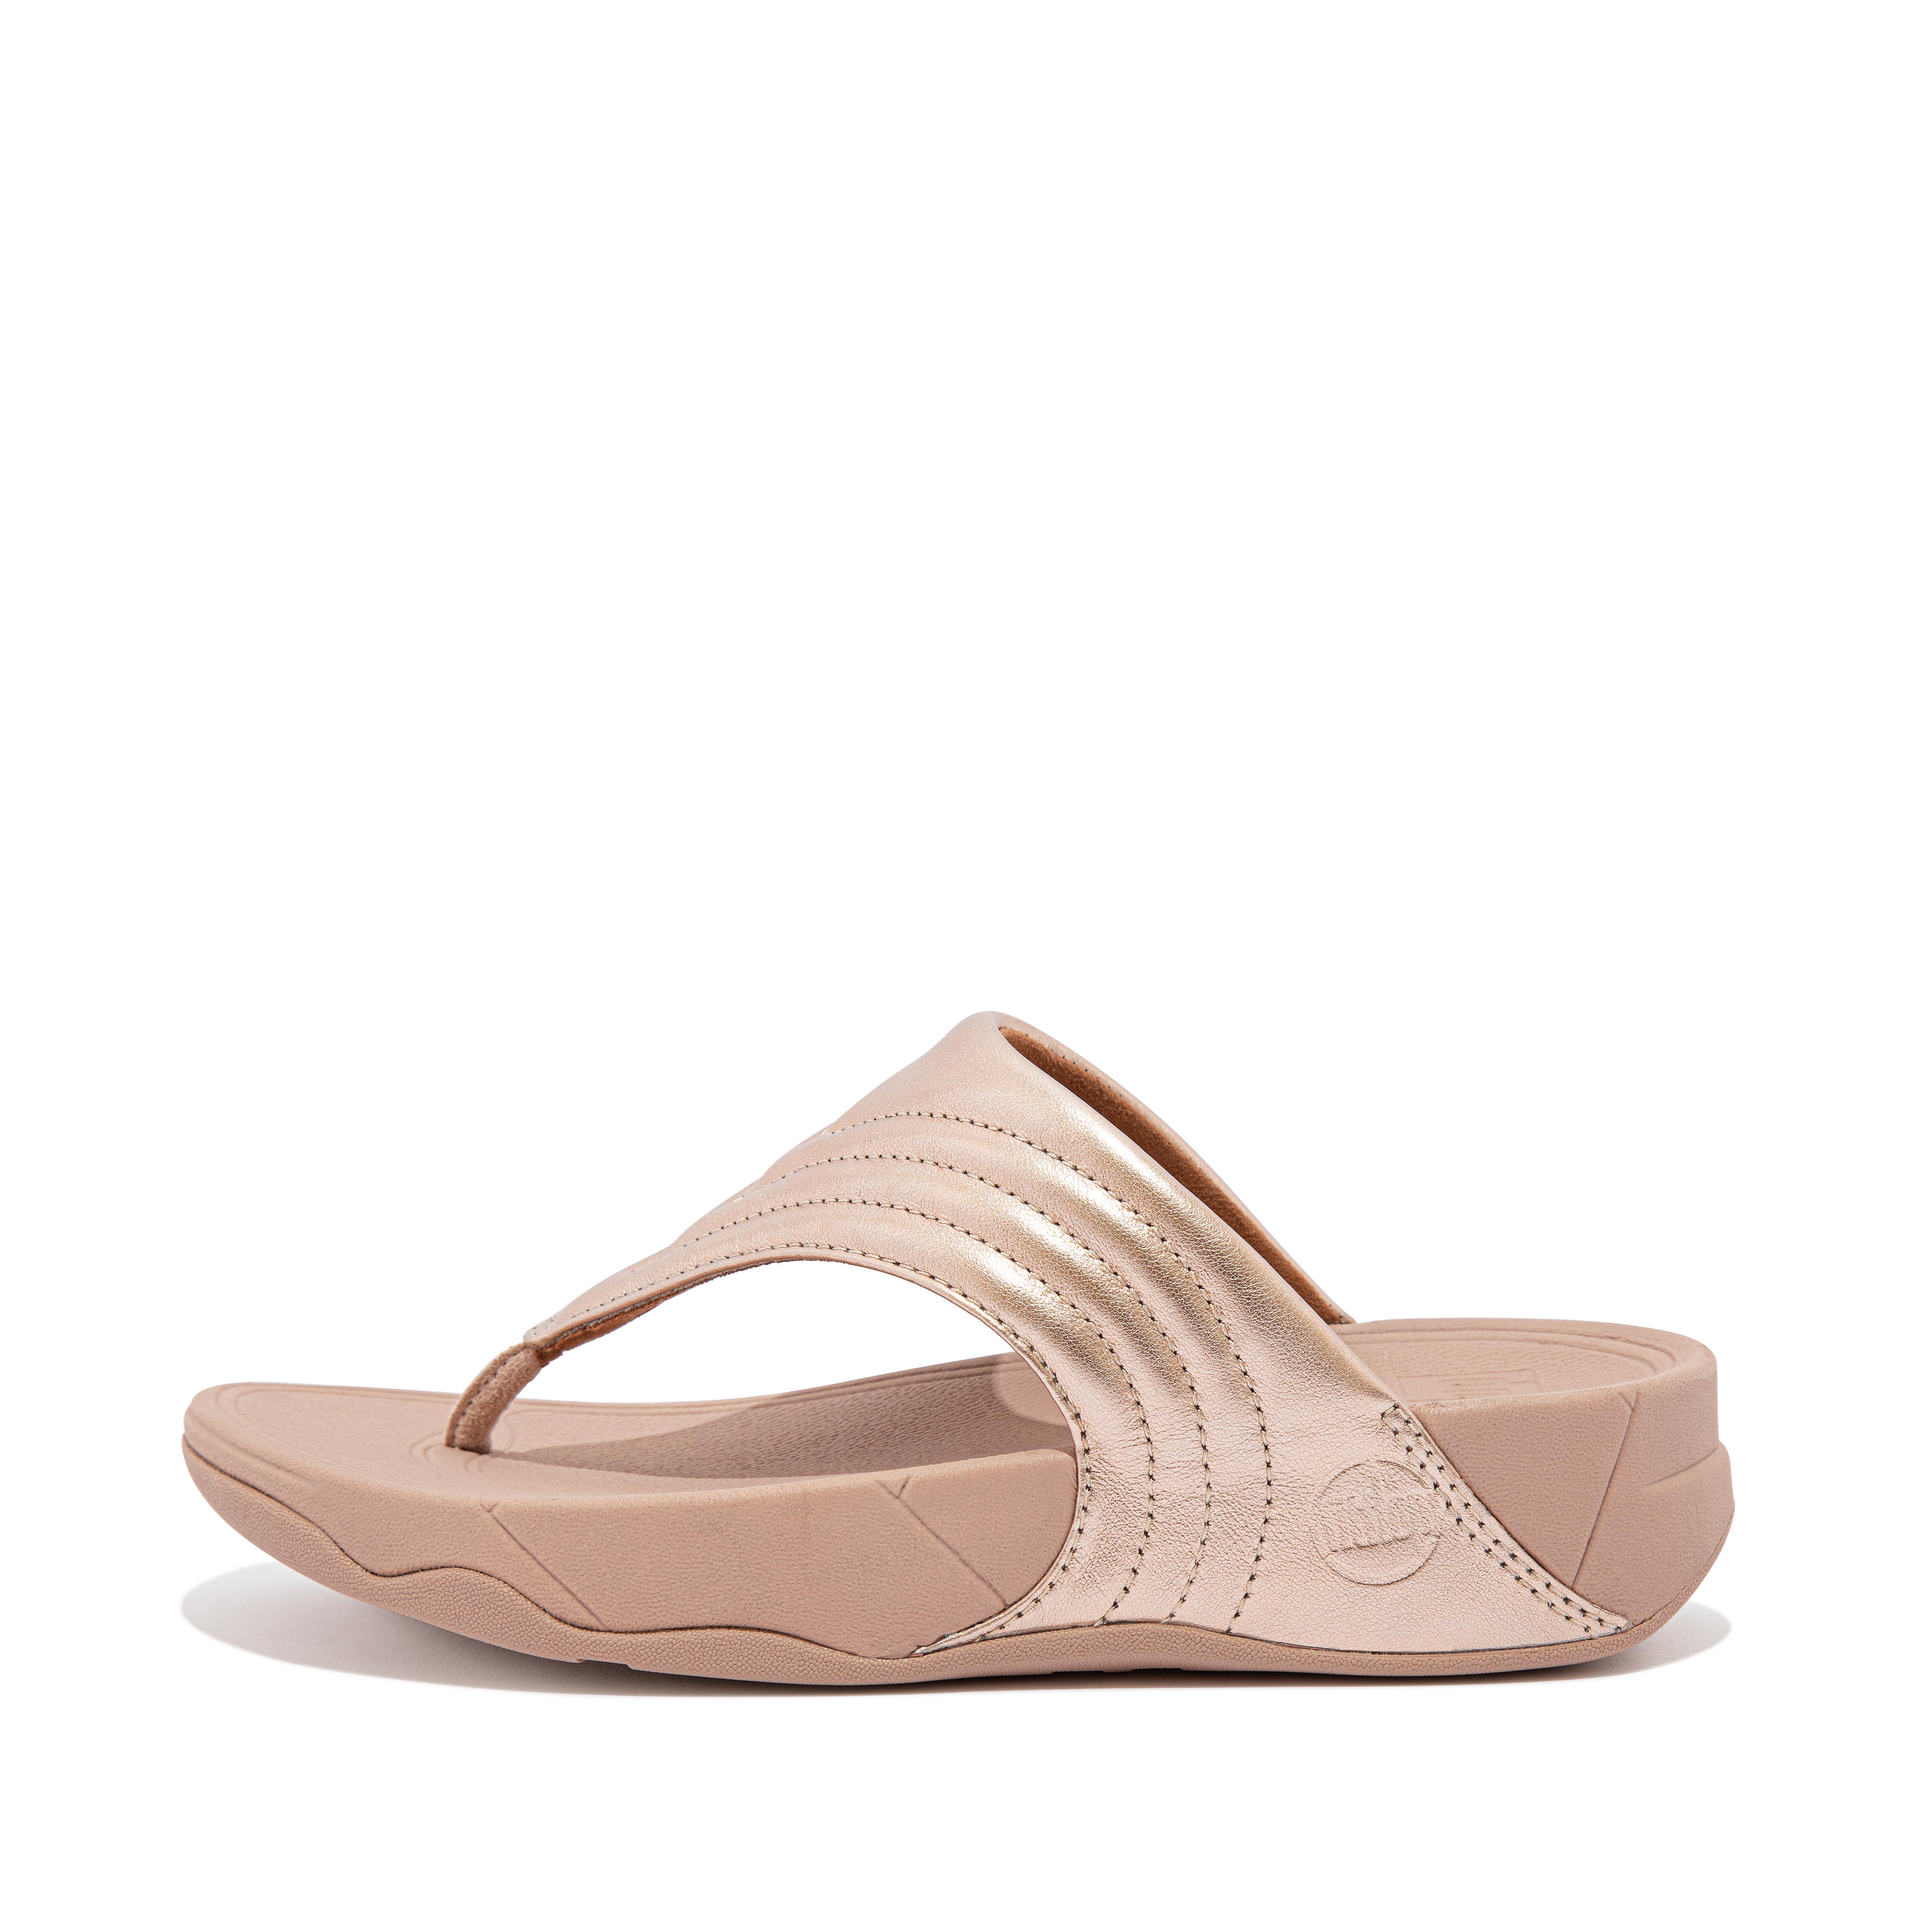 핏플랍 샌들 FitFlop WALKSTAR Leather Toe-Post Sandals,Rose Gold